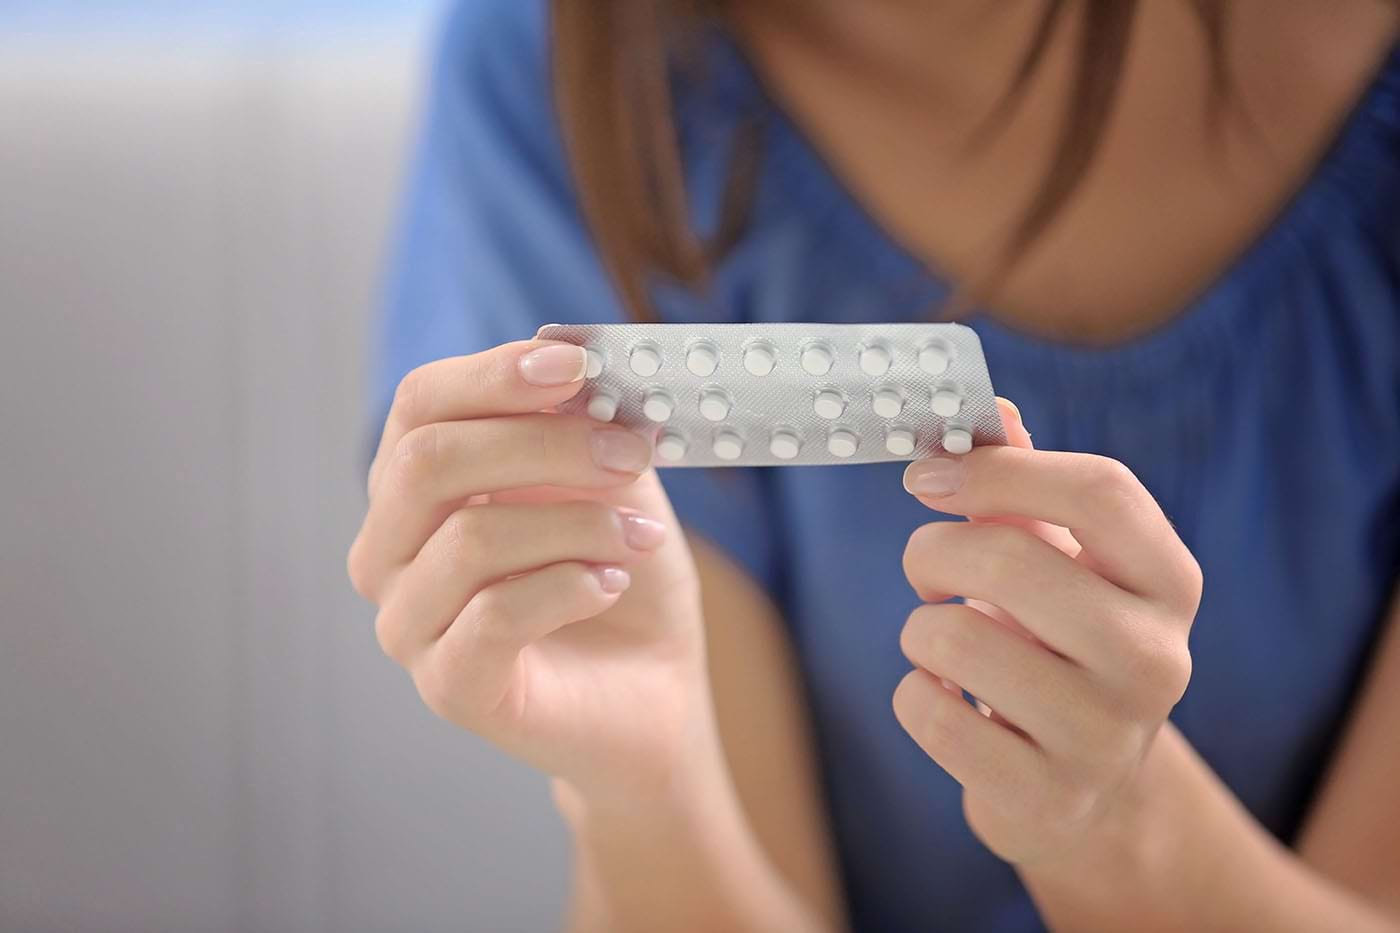 contraceptive orale care cauzează pierderea în greutate)